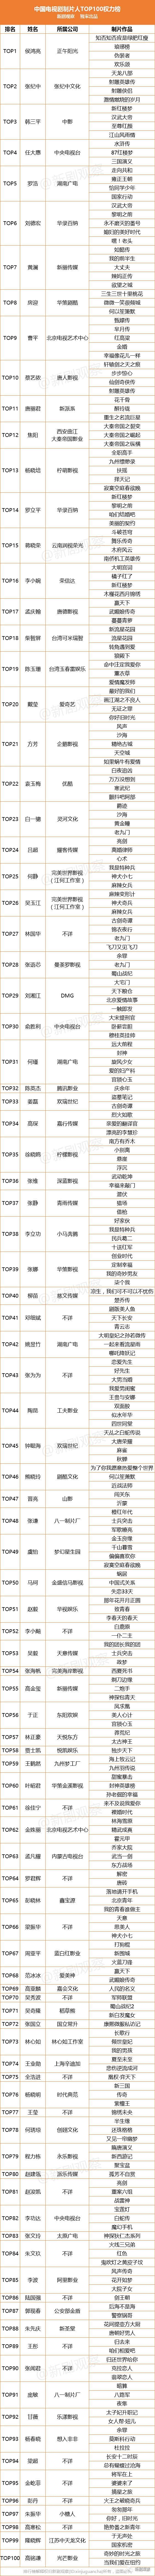 中国电视剧制片人TOP100权力榜出炉！侯鸿亮、张纪中、韩三平位列前三甲！